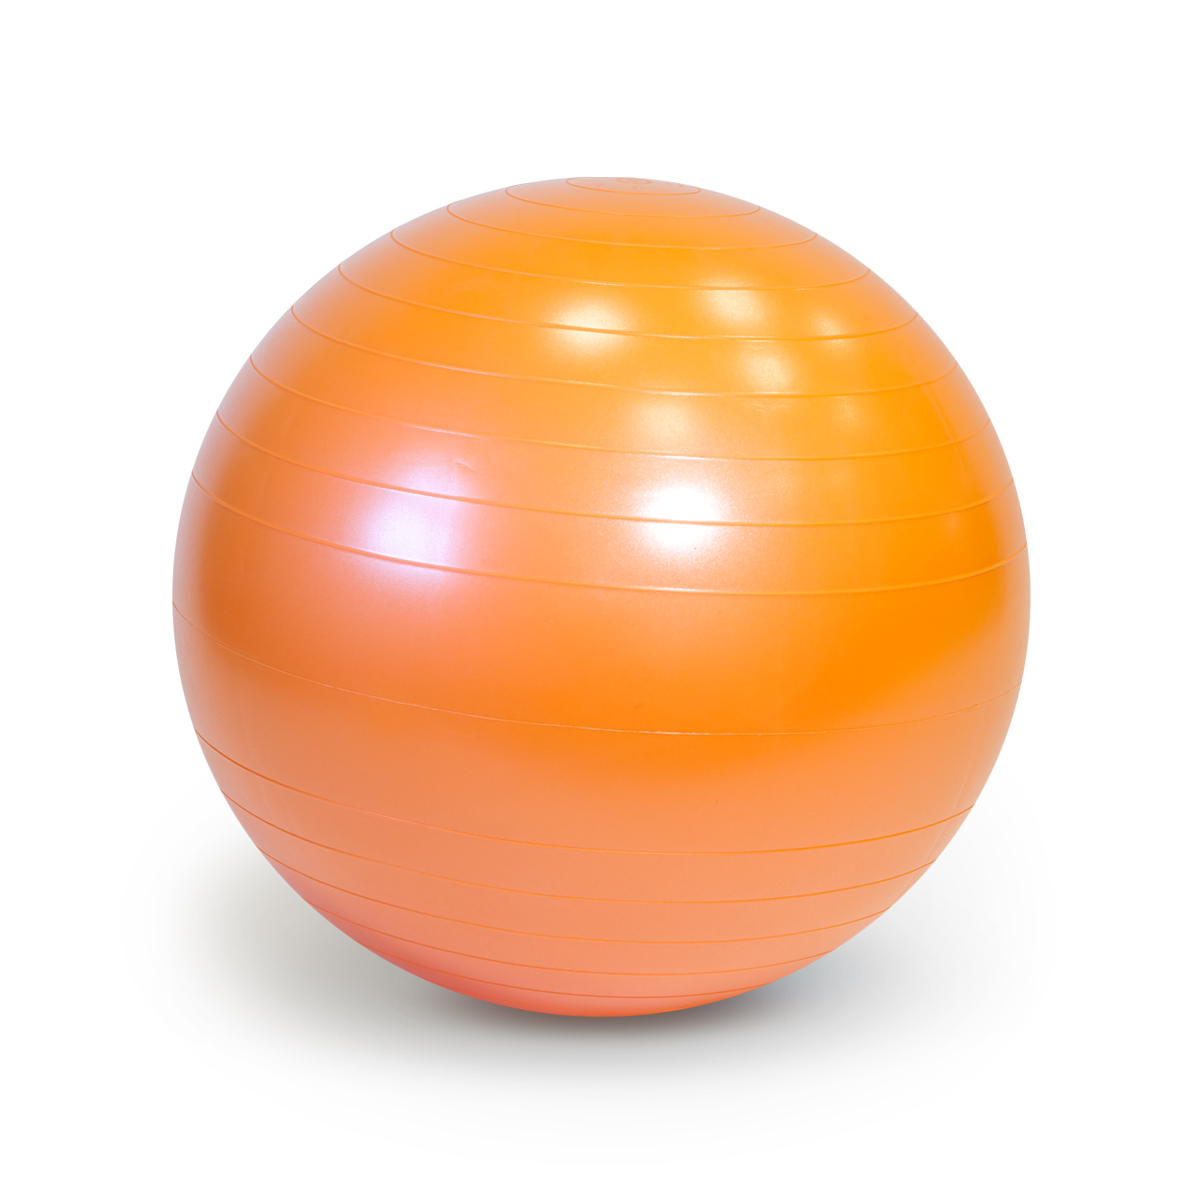 Мяч гимнастический фитбол GYMNIC PLUS 65 см, оранжевый Ledraplastic №  20063: цены, описание, характеристики, фото.